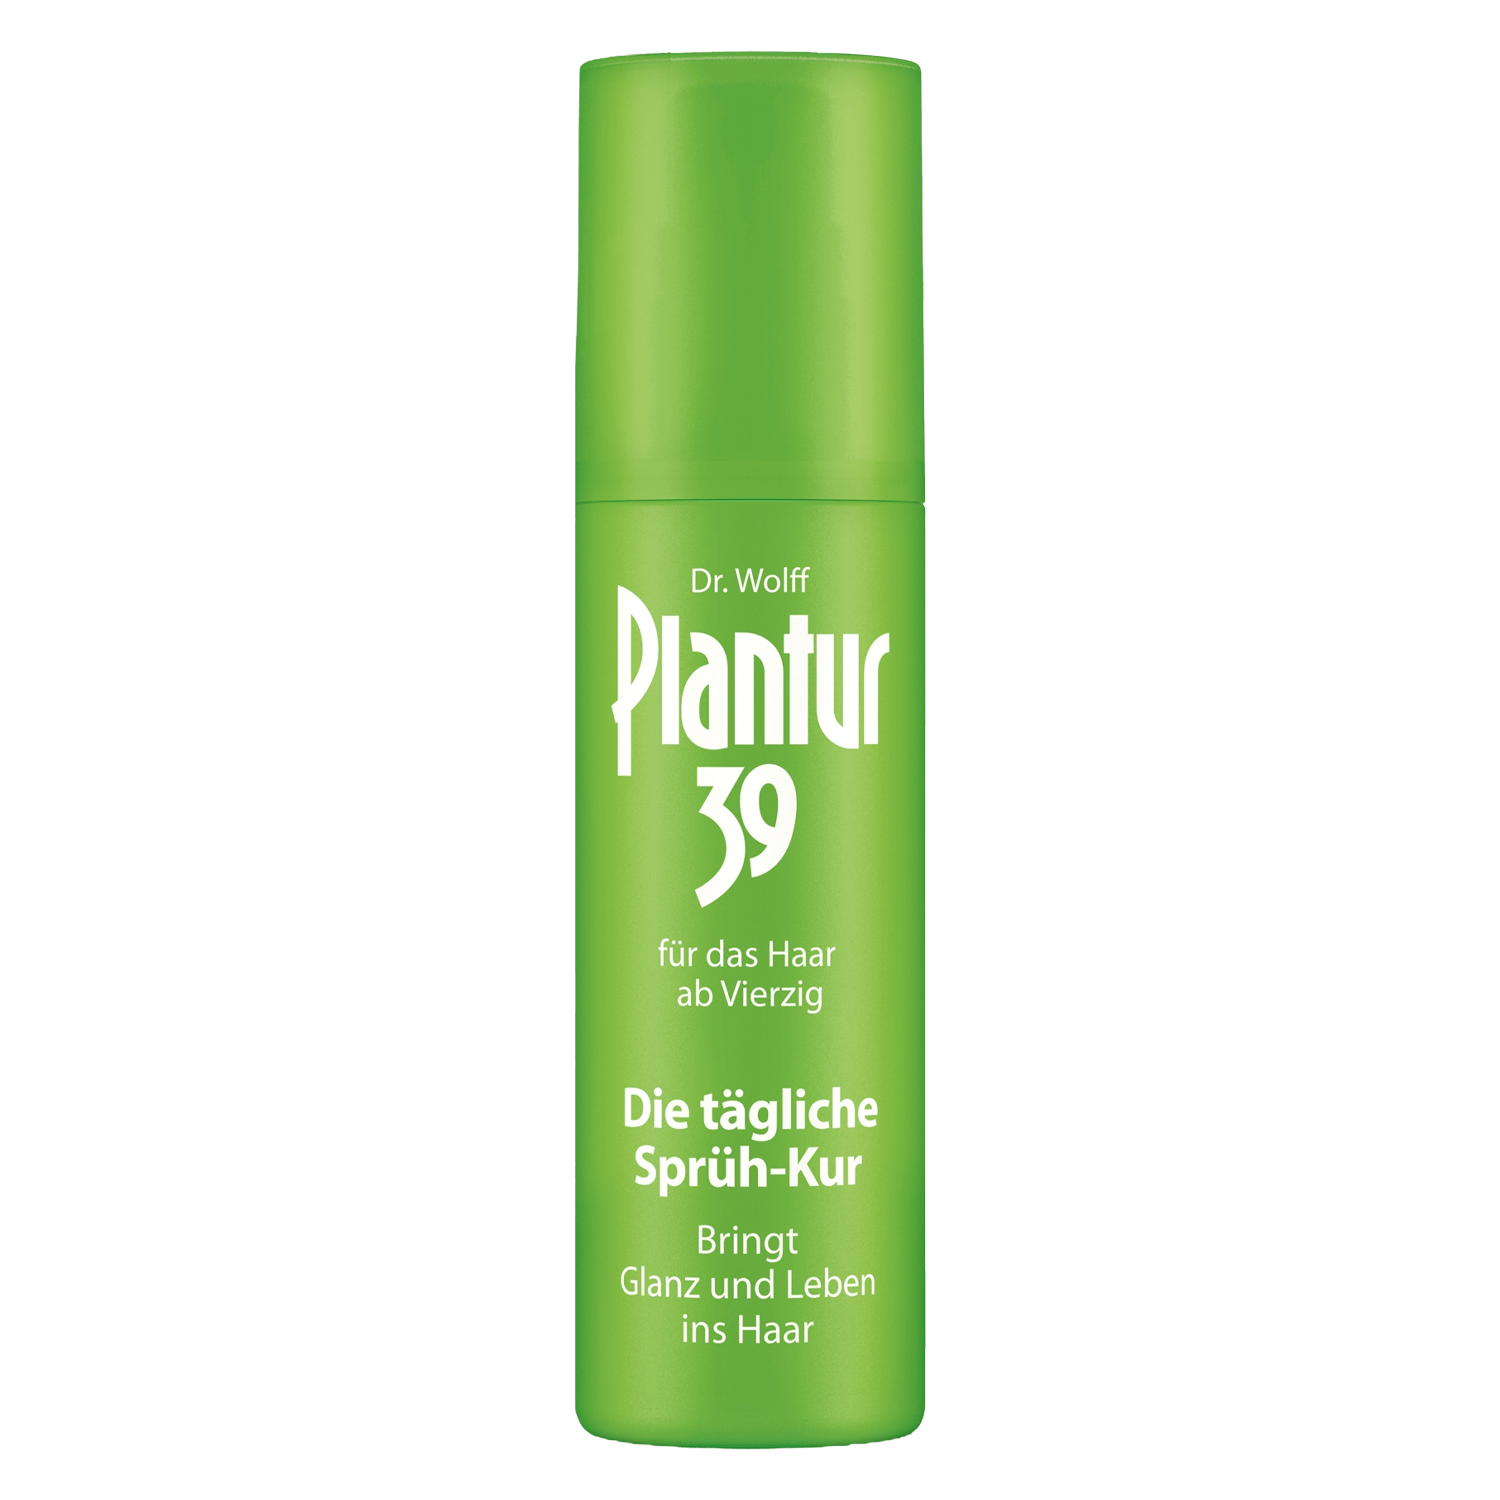 Product image from Plantur 39 - Sprüh-Kur